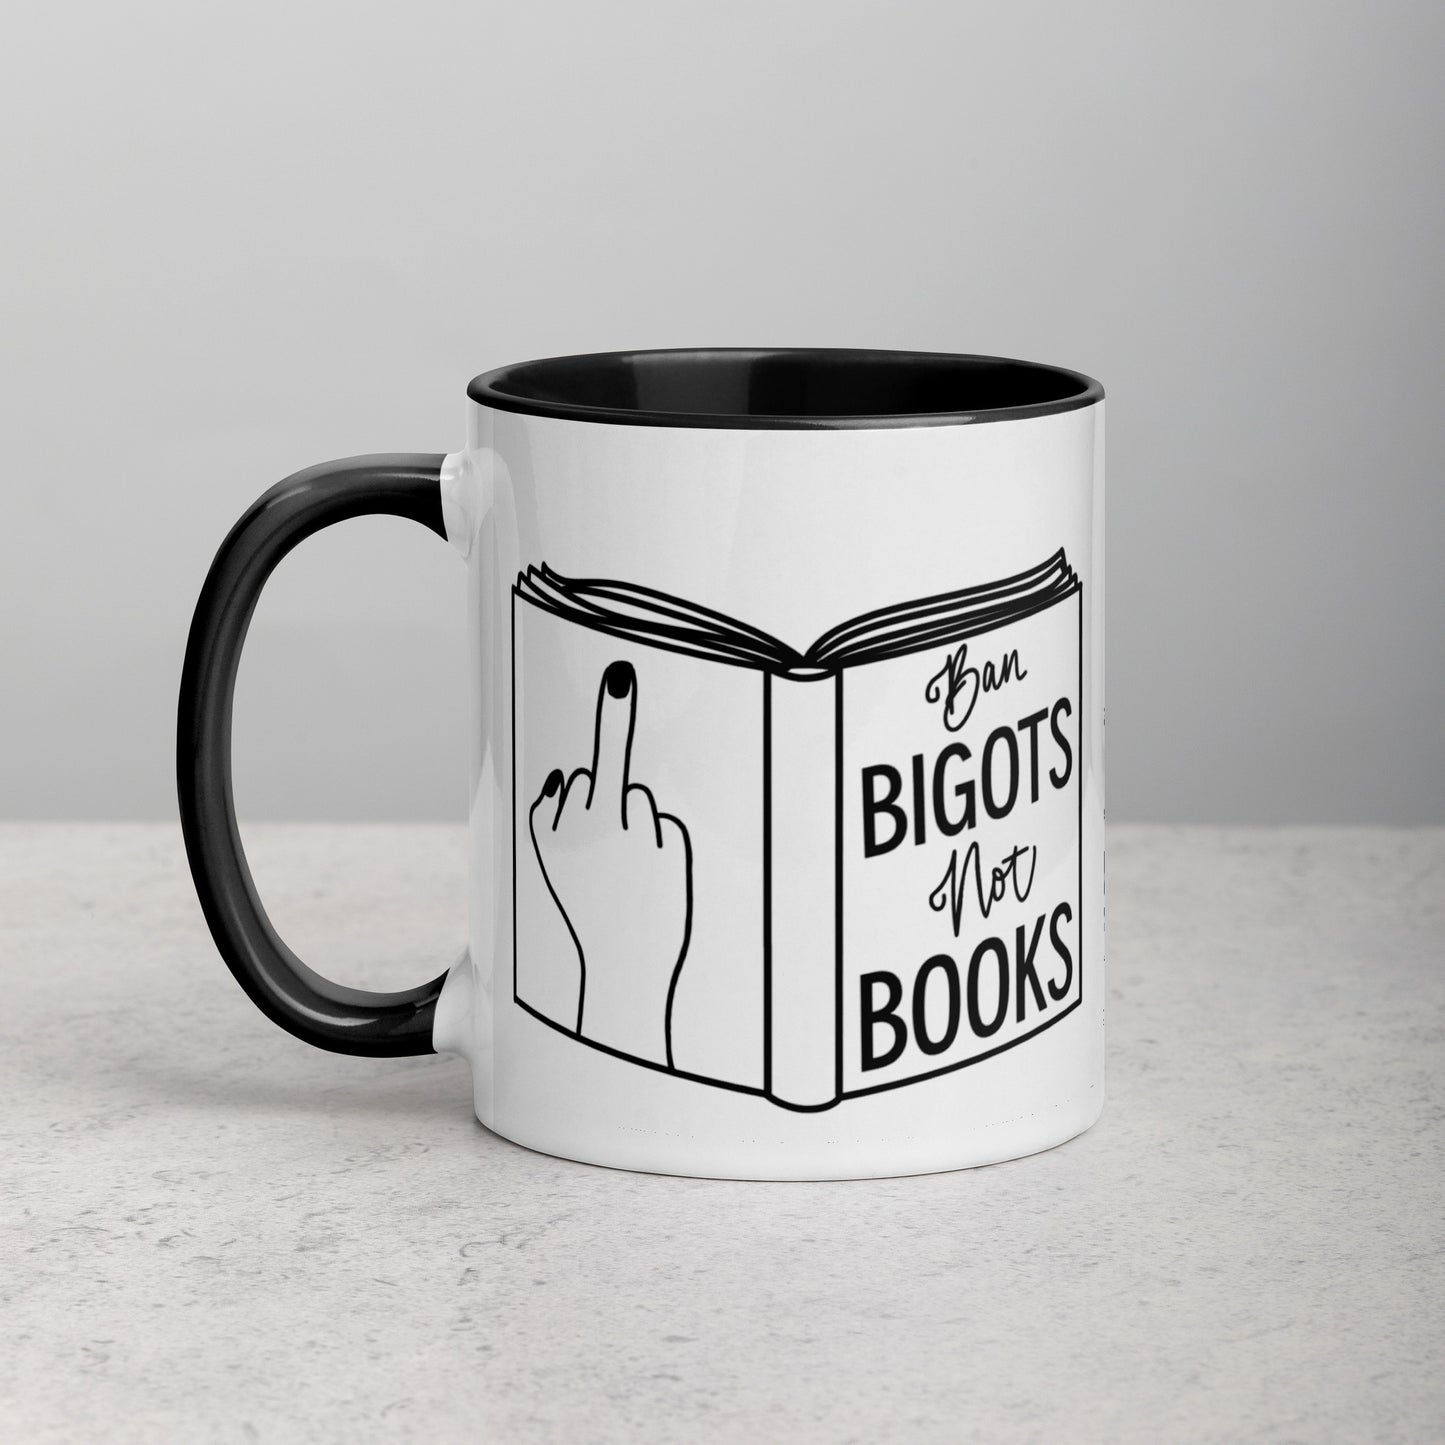 Ban Bigots, Not Books Mug